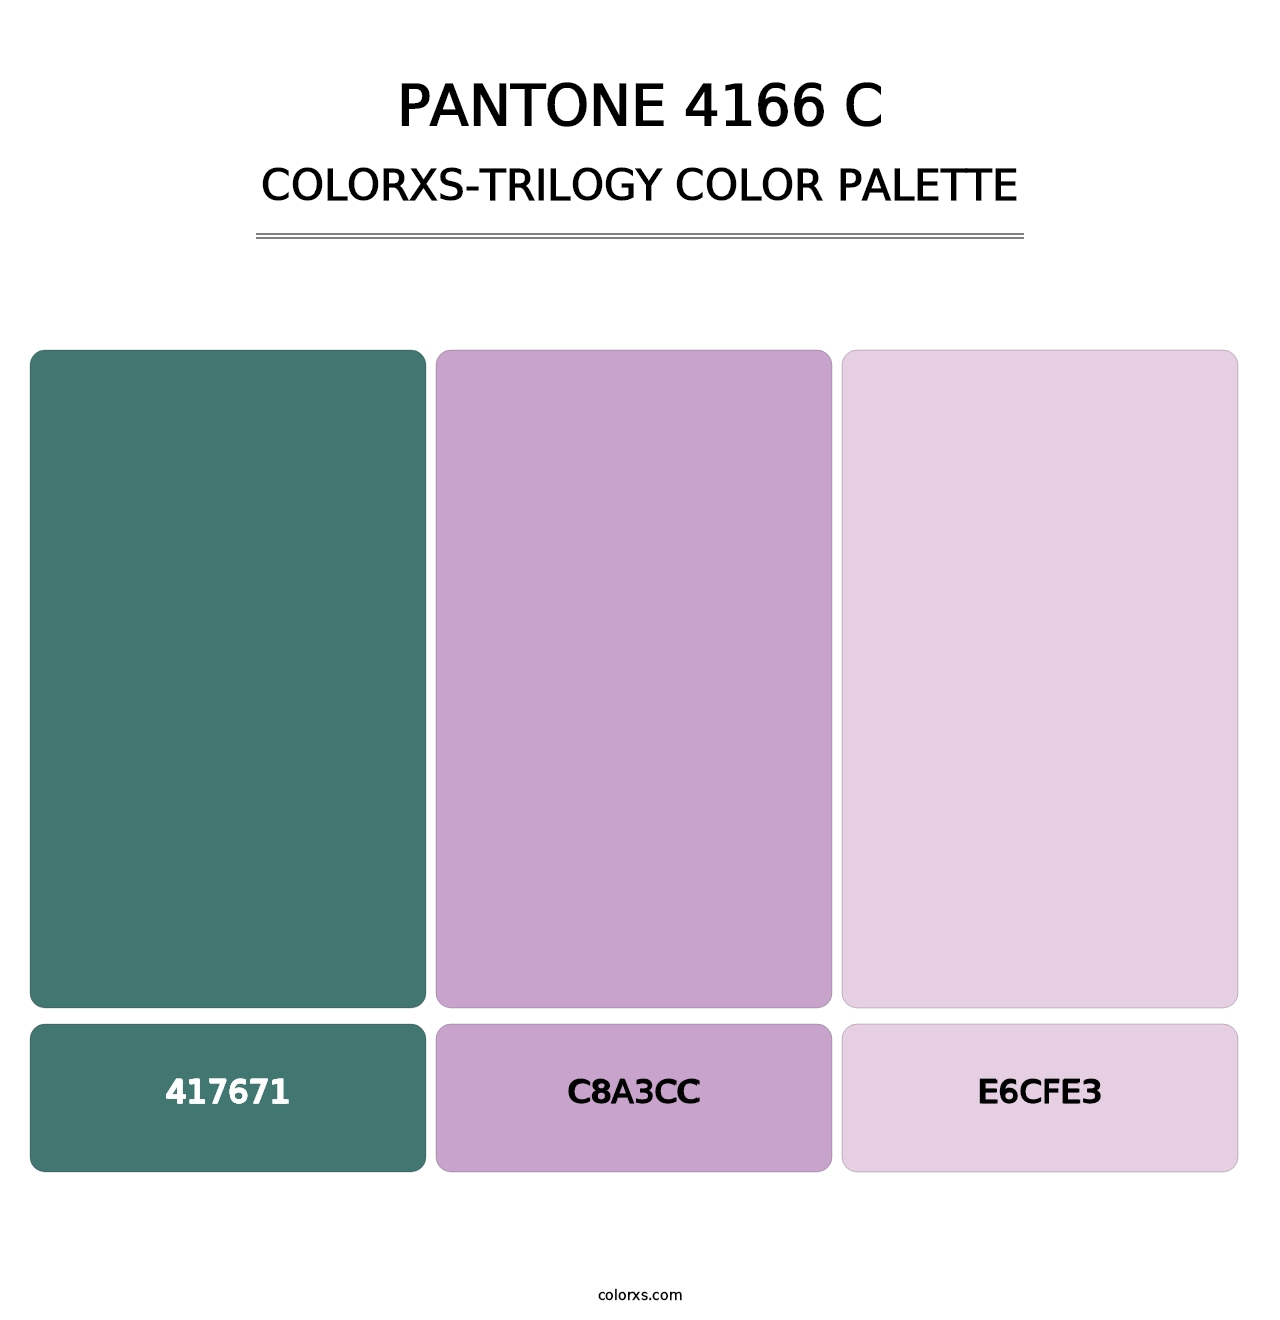 PANTONE 4166 C - Colorxs Trilogy Palette